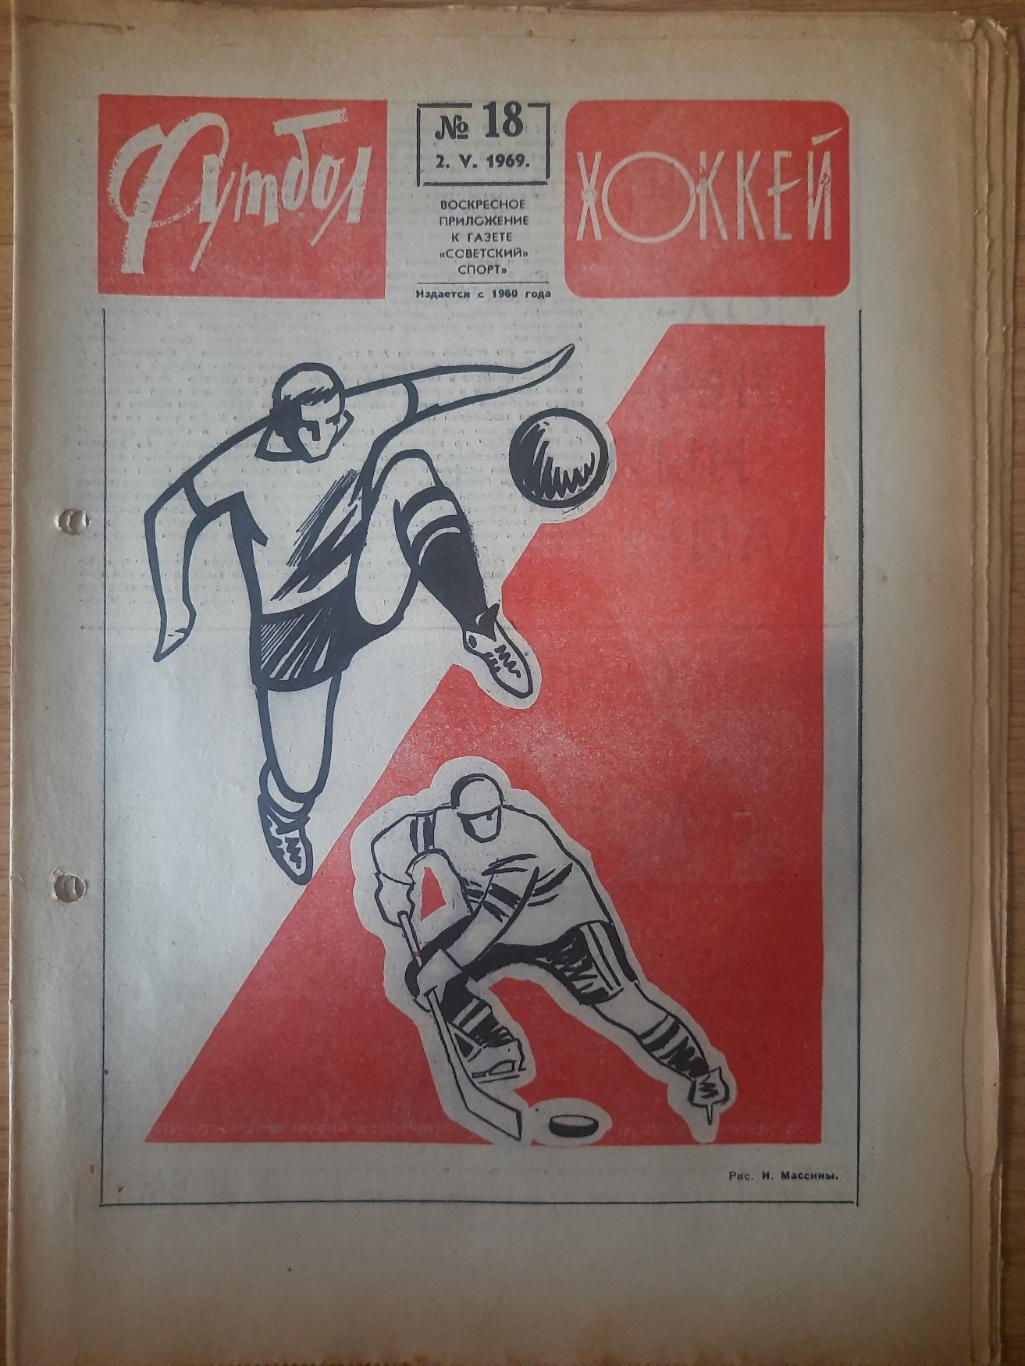 еженедельник футбол-хоккей #18, 1969.